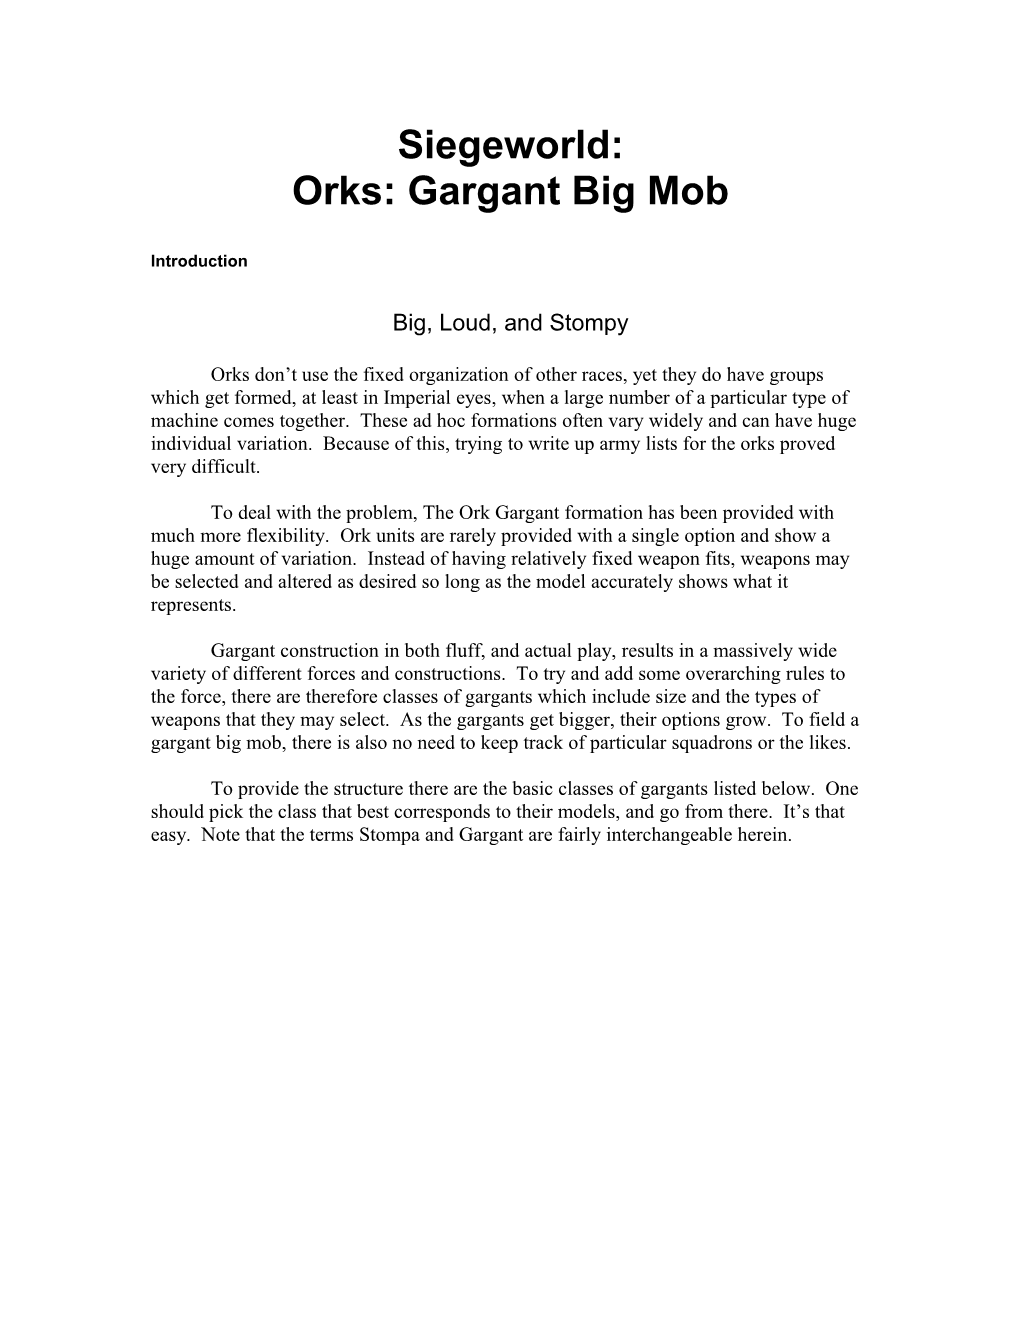 Orks: Gargant Big Mob